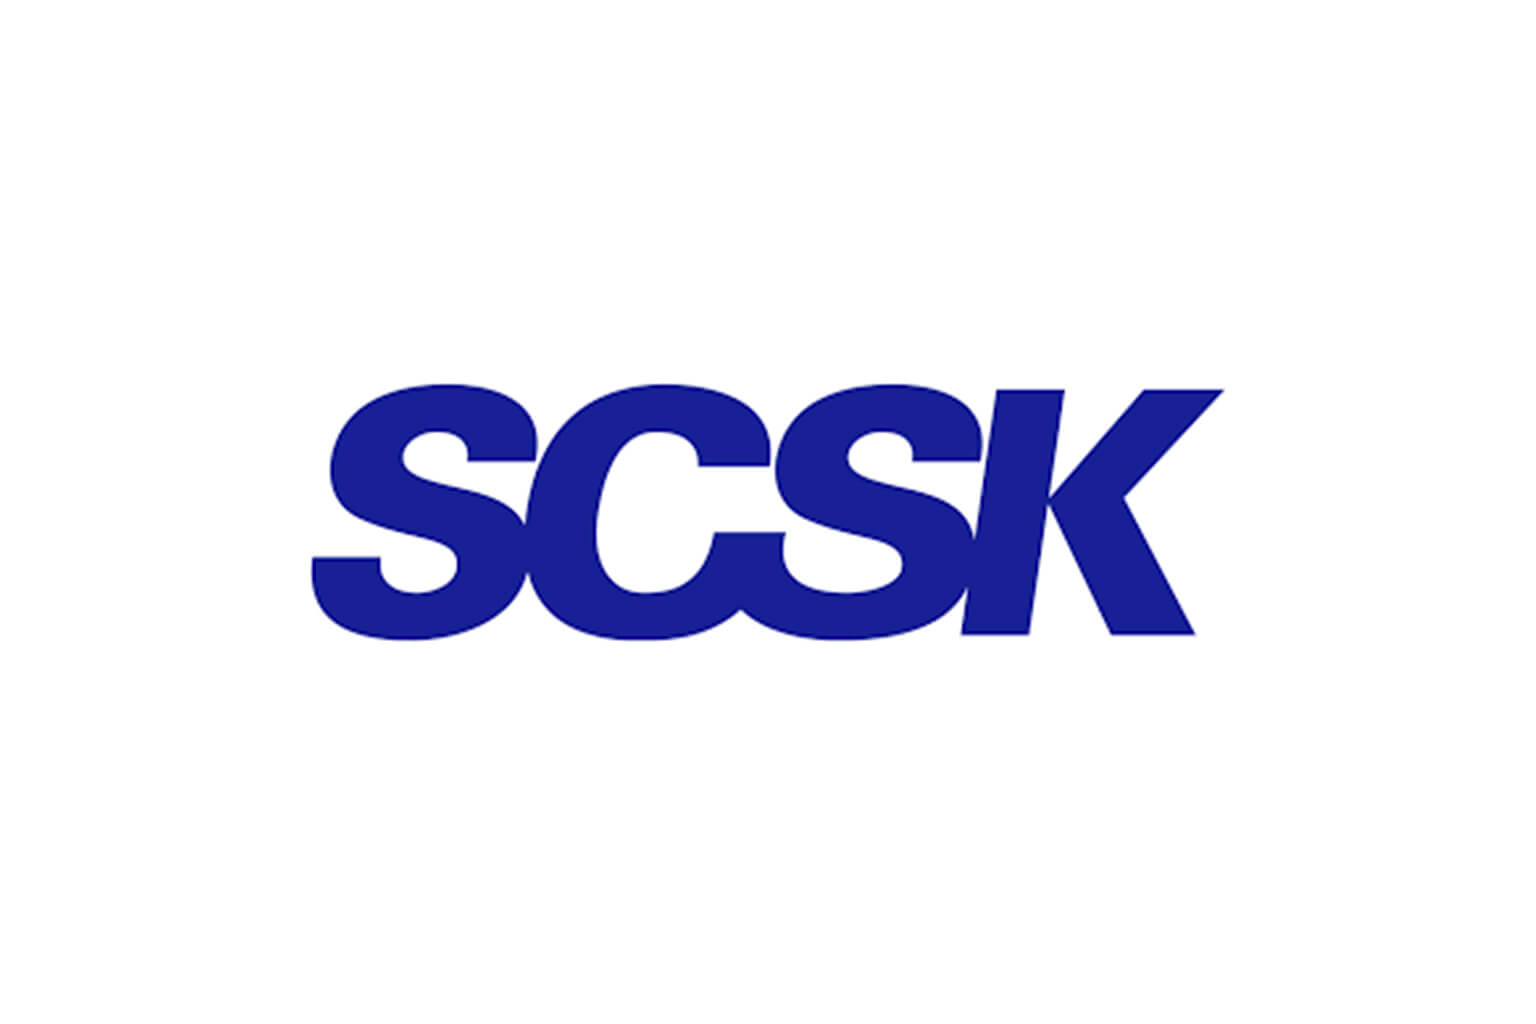 SCSK Corporation